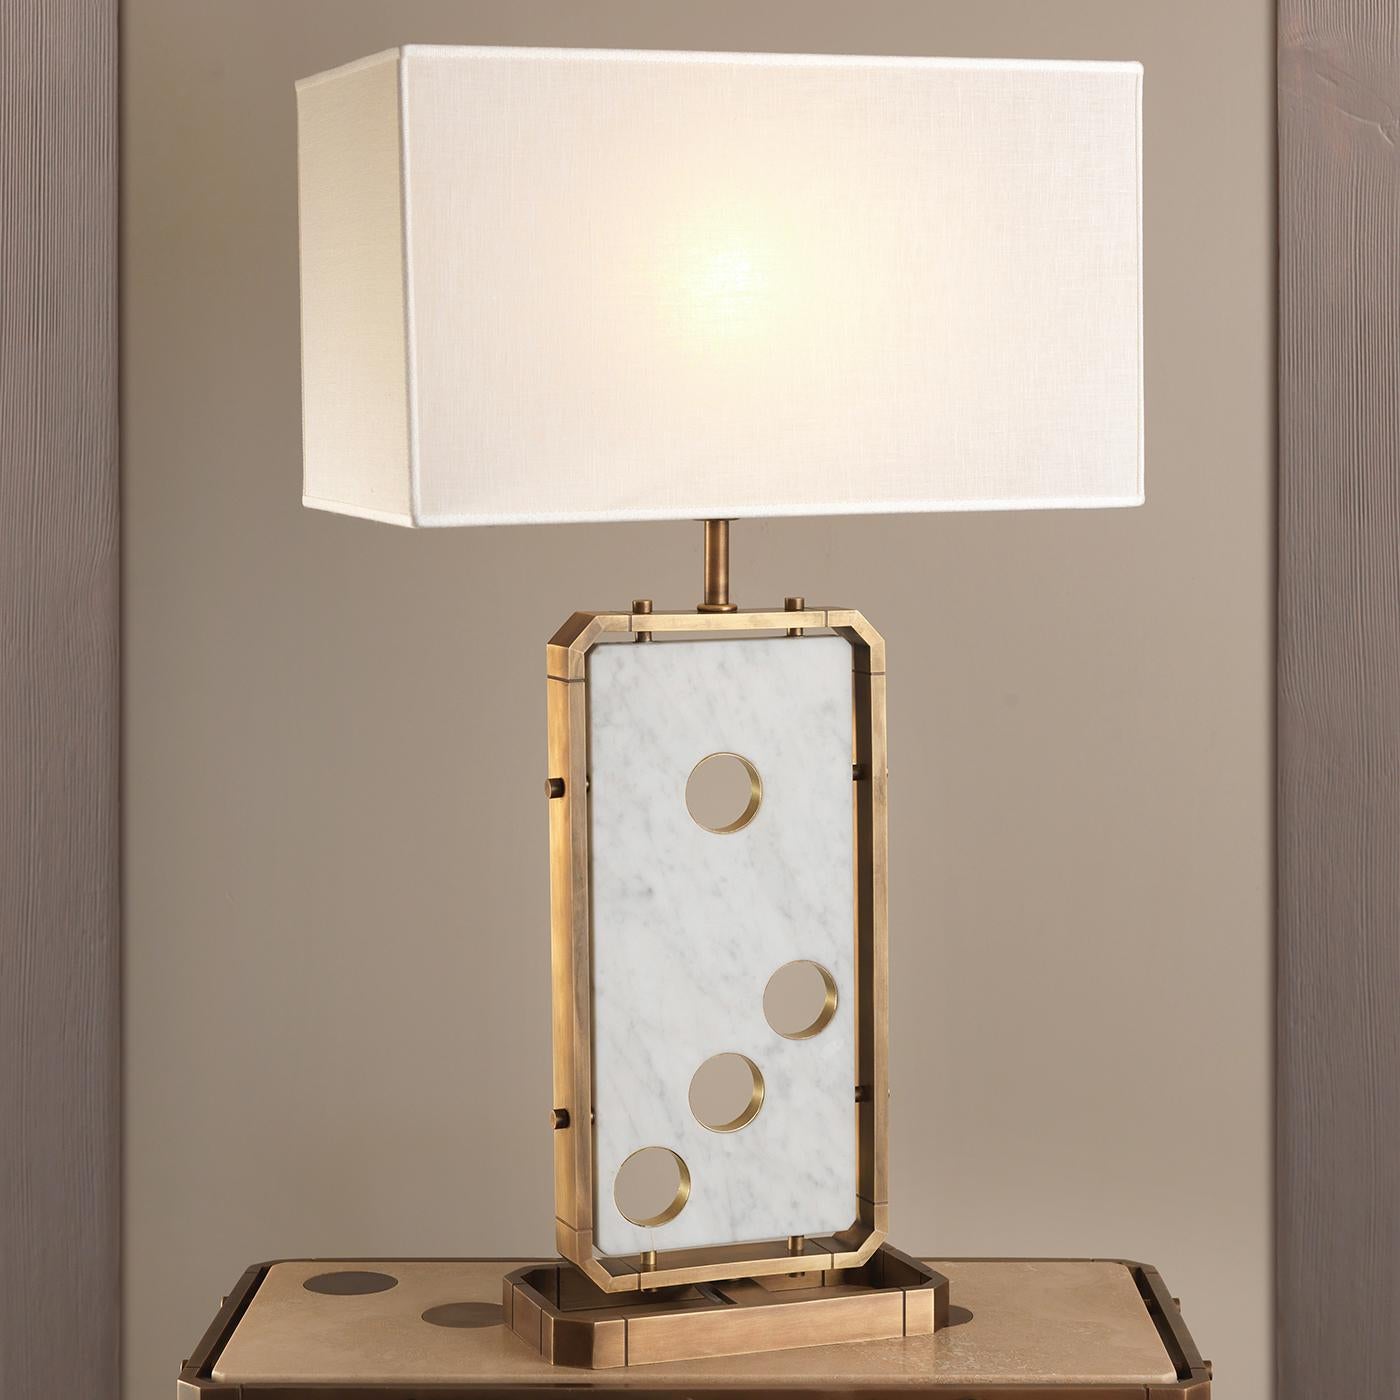 Cette splendide lampe de table conçue par le studio Ciarmoli Queda fait partie de la collection Domino. Cette pièce ludique peut être affichée comme une déclaration dans un intérieur moderne, ou combinée avec la console de la même série pour un look